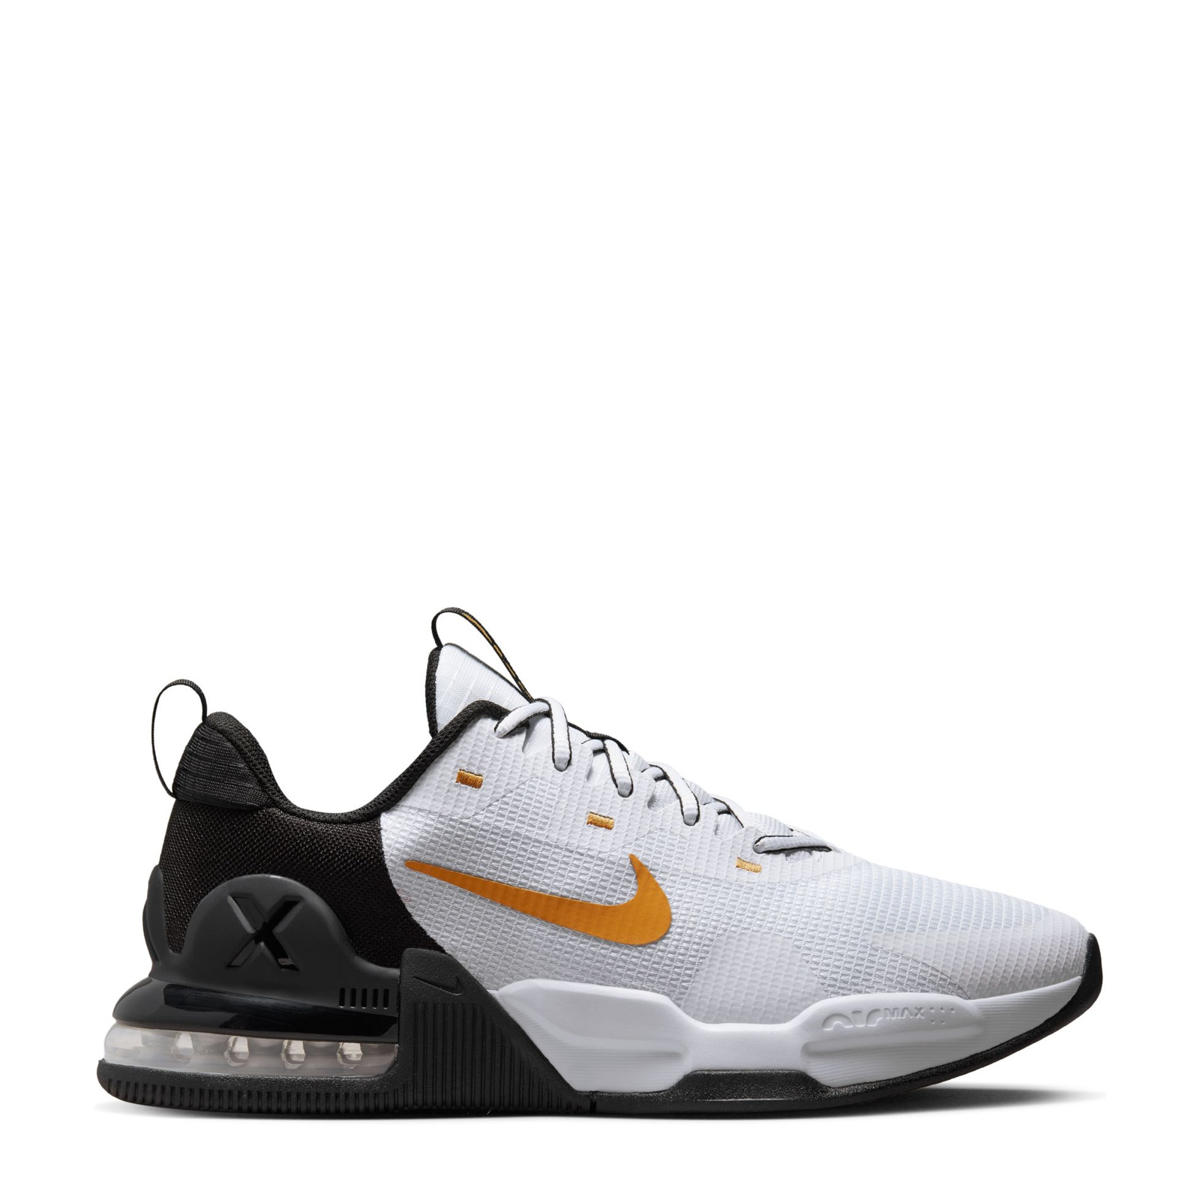 Tot ziens Dertig Afgrond Nike Air Max Alpha Trainer 5 fitness schoenen wit/zwart/oranje | wehkamp